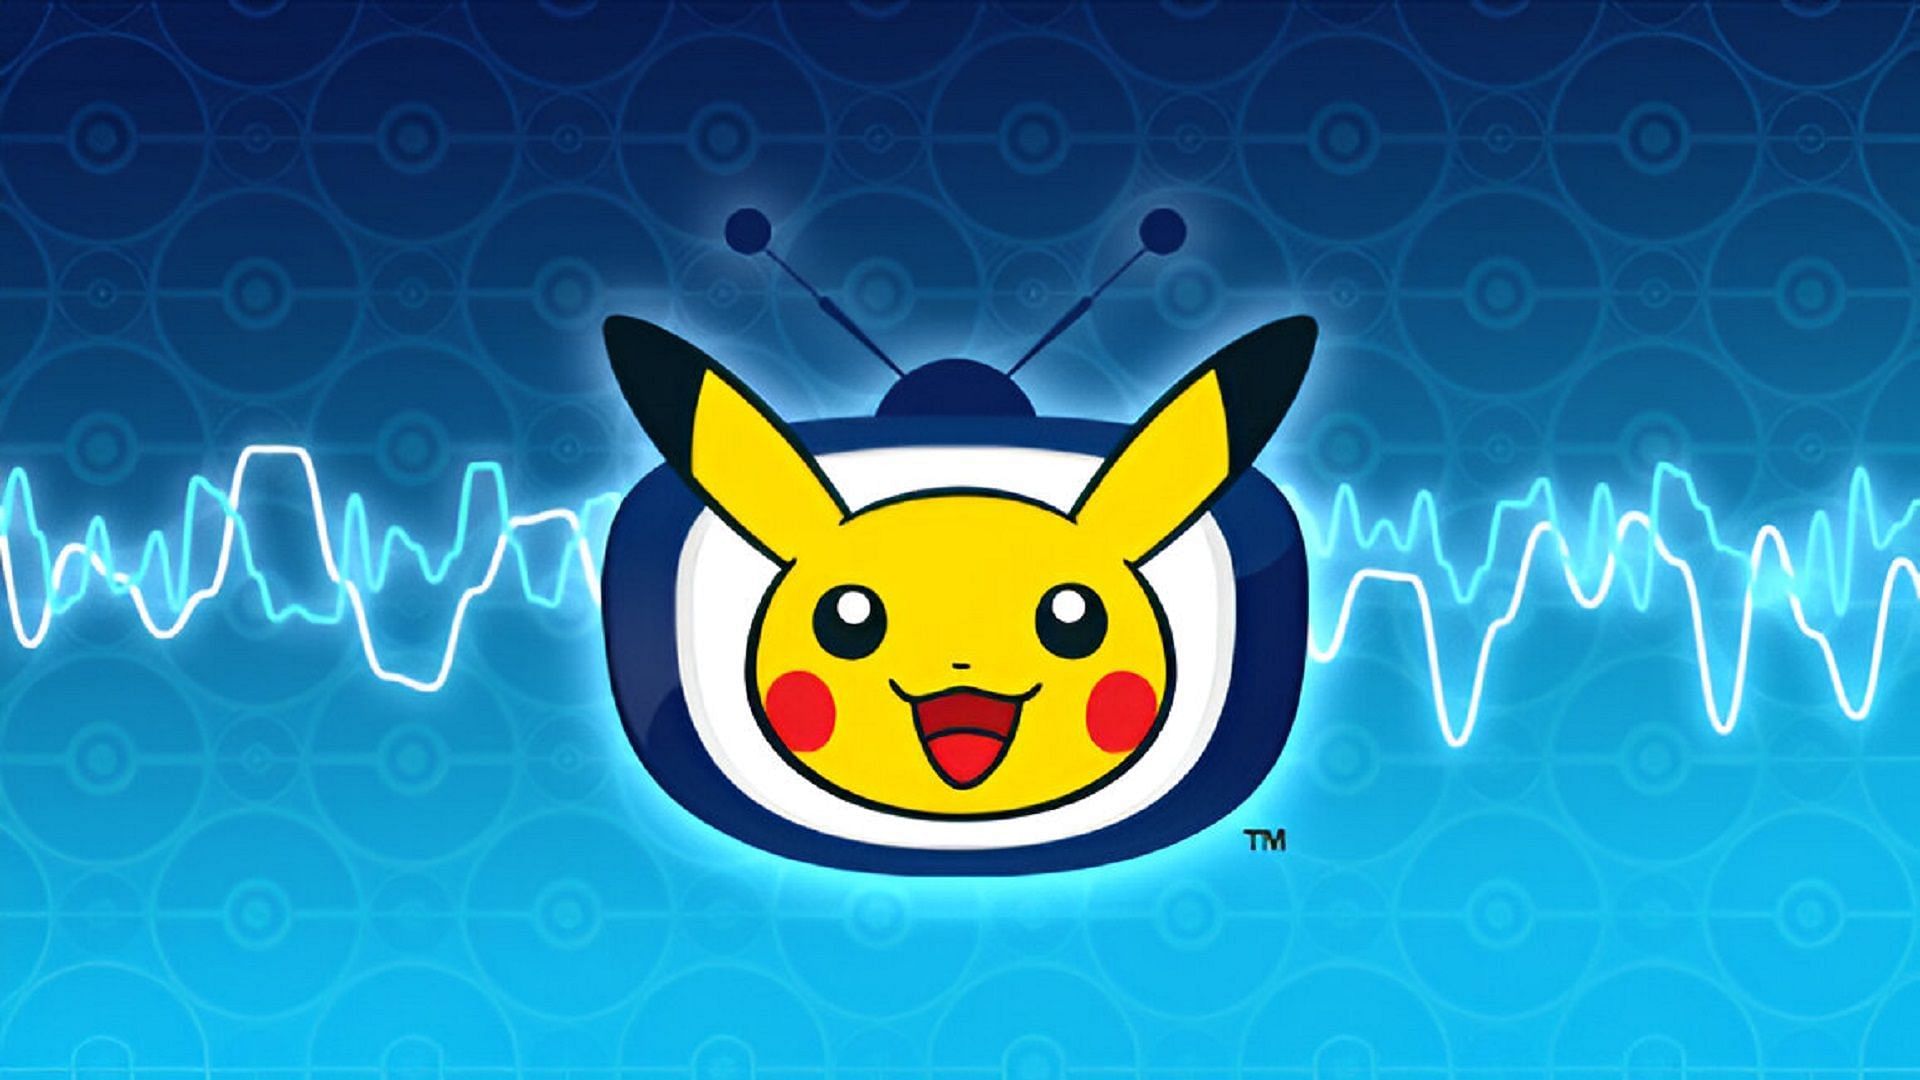 The official art for the Pokemon TV app.